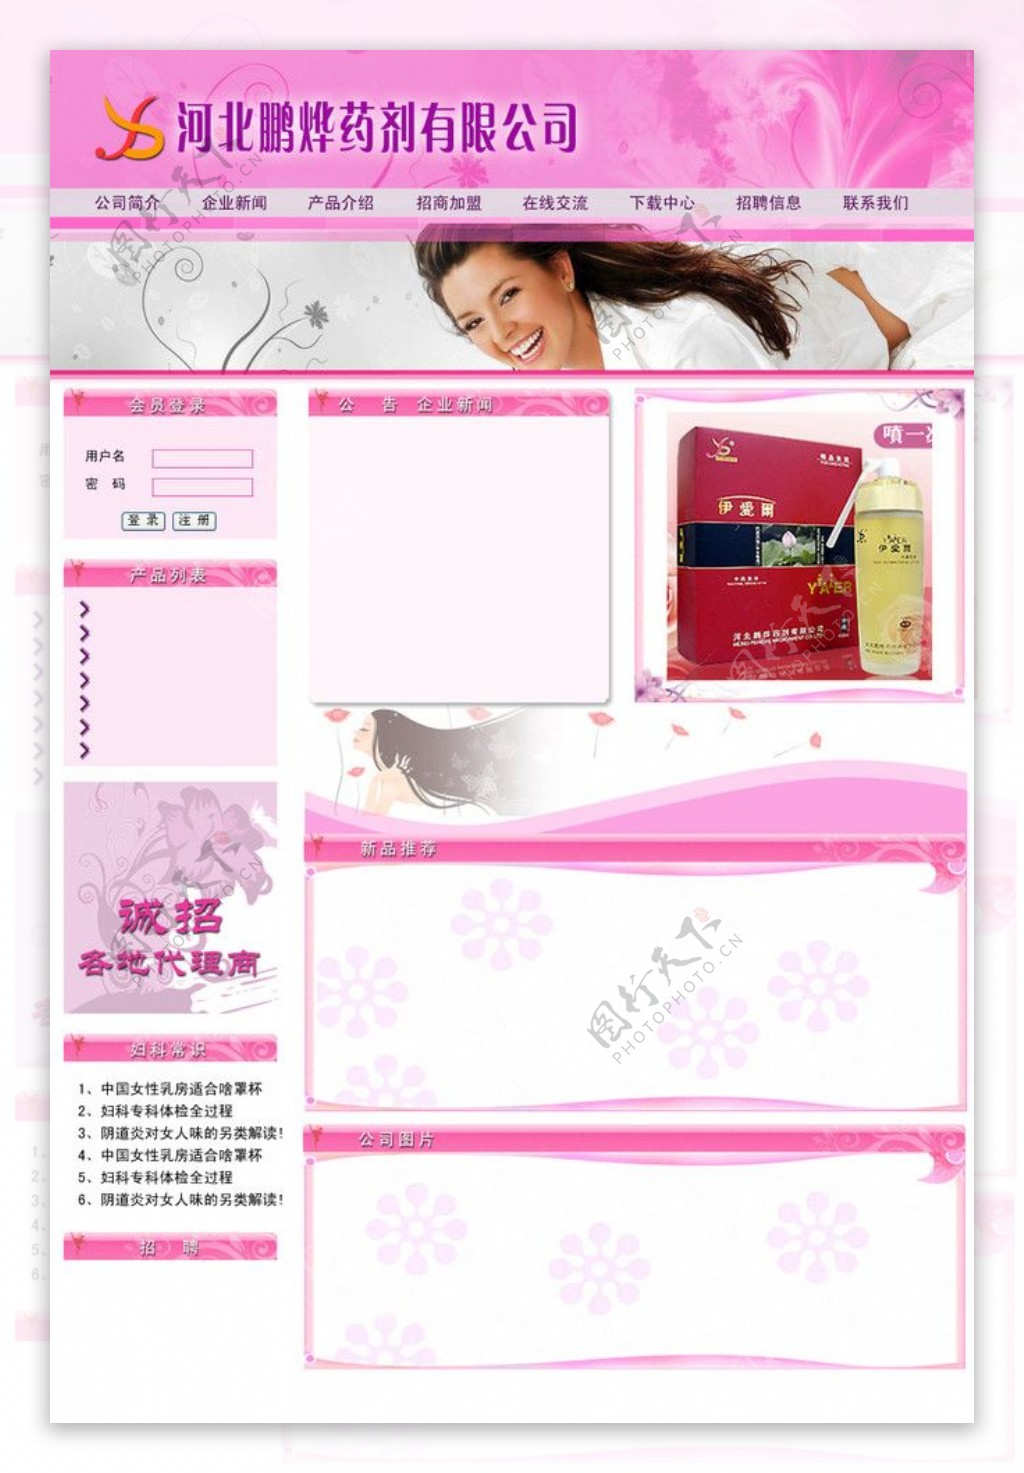 女性用品网站首页图片